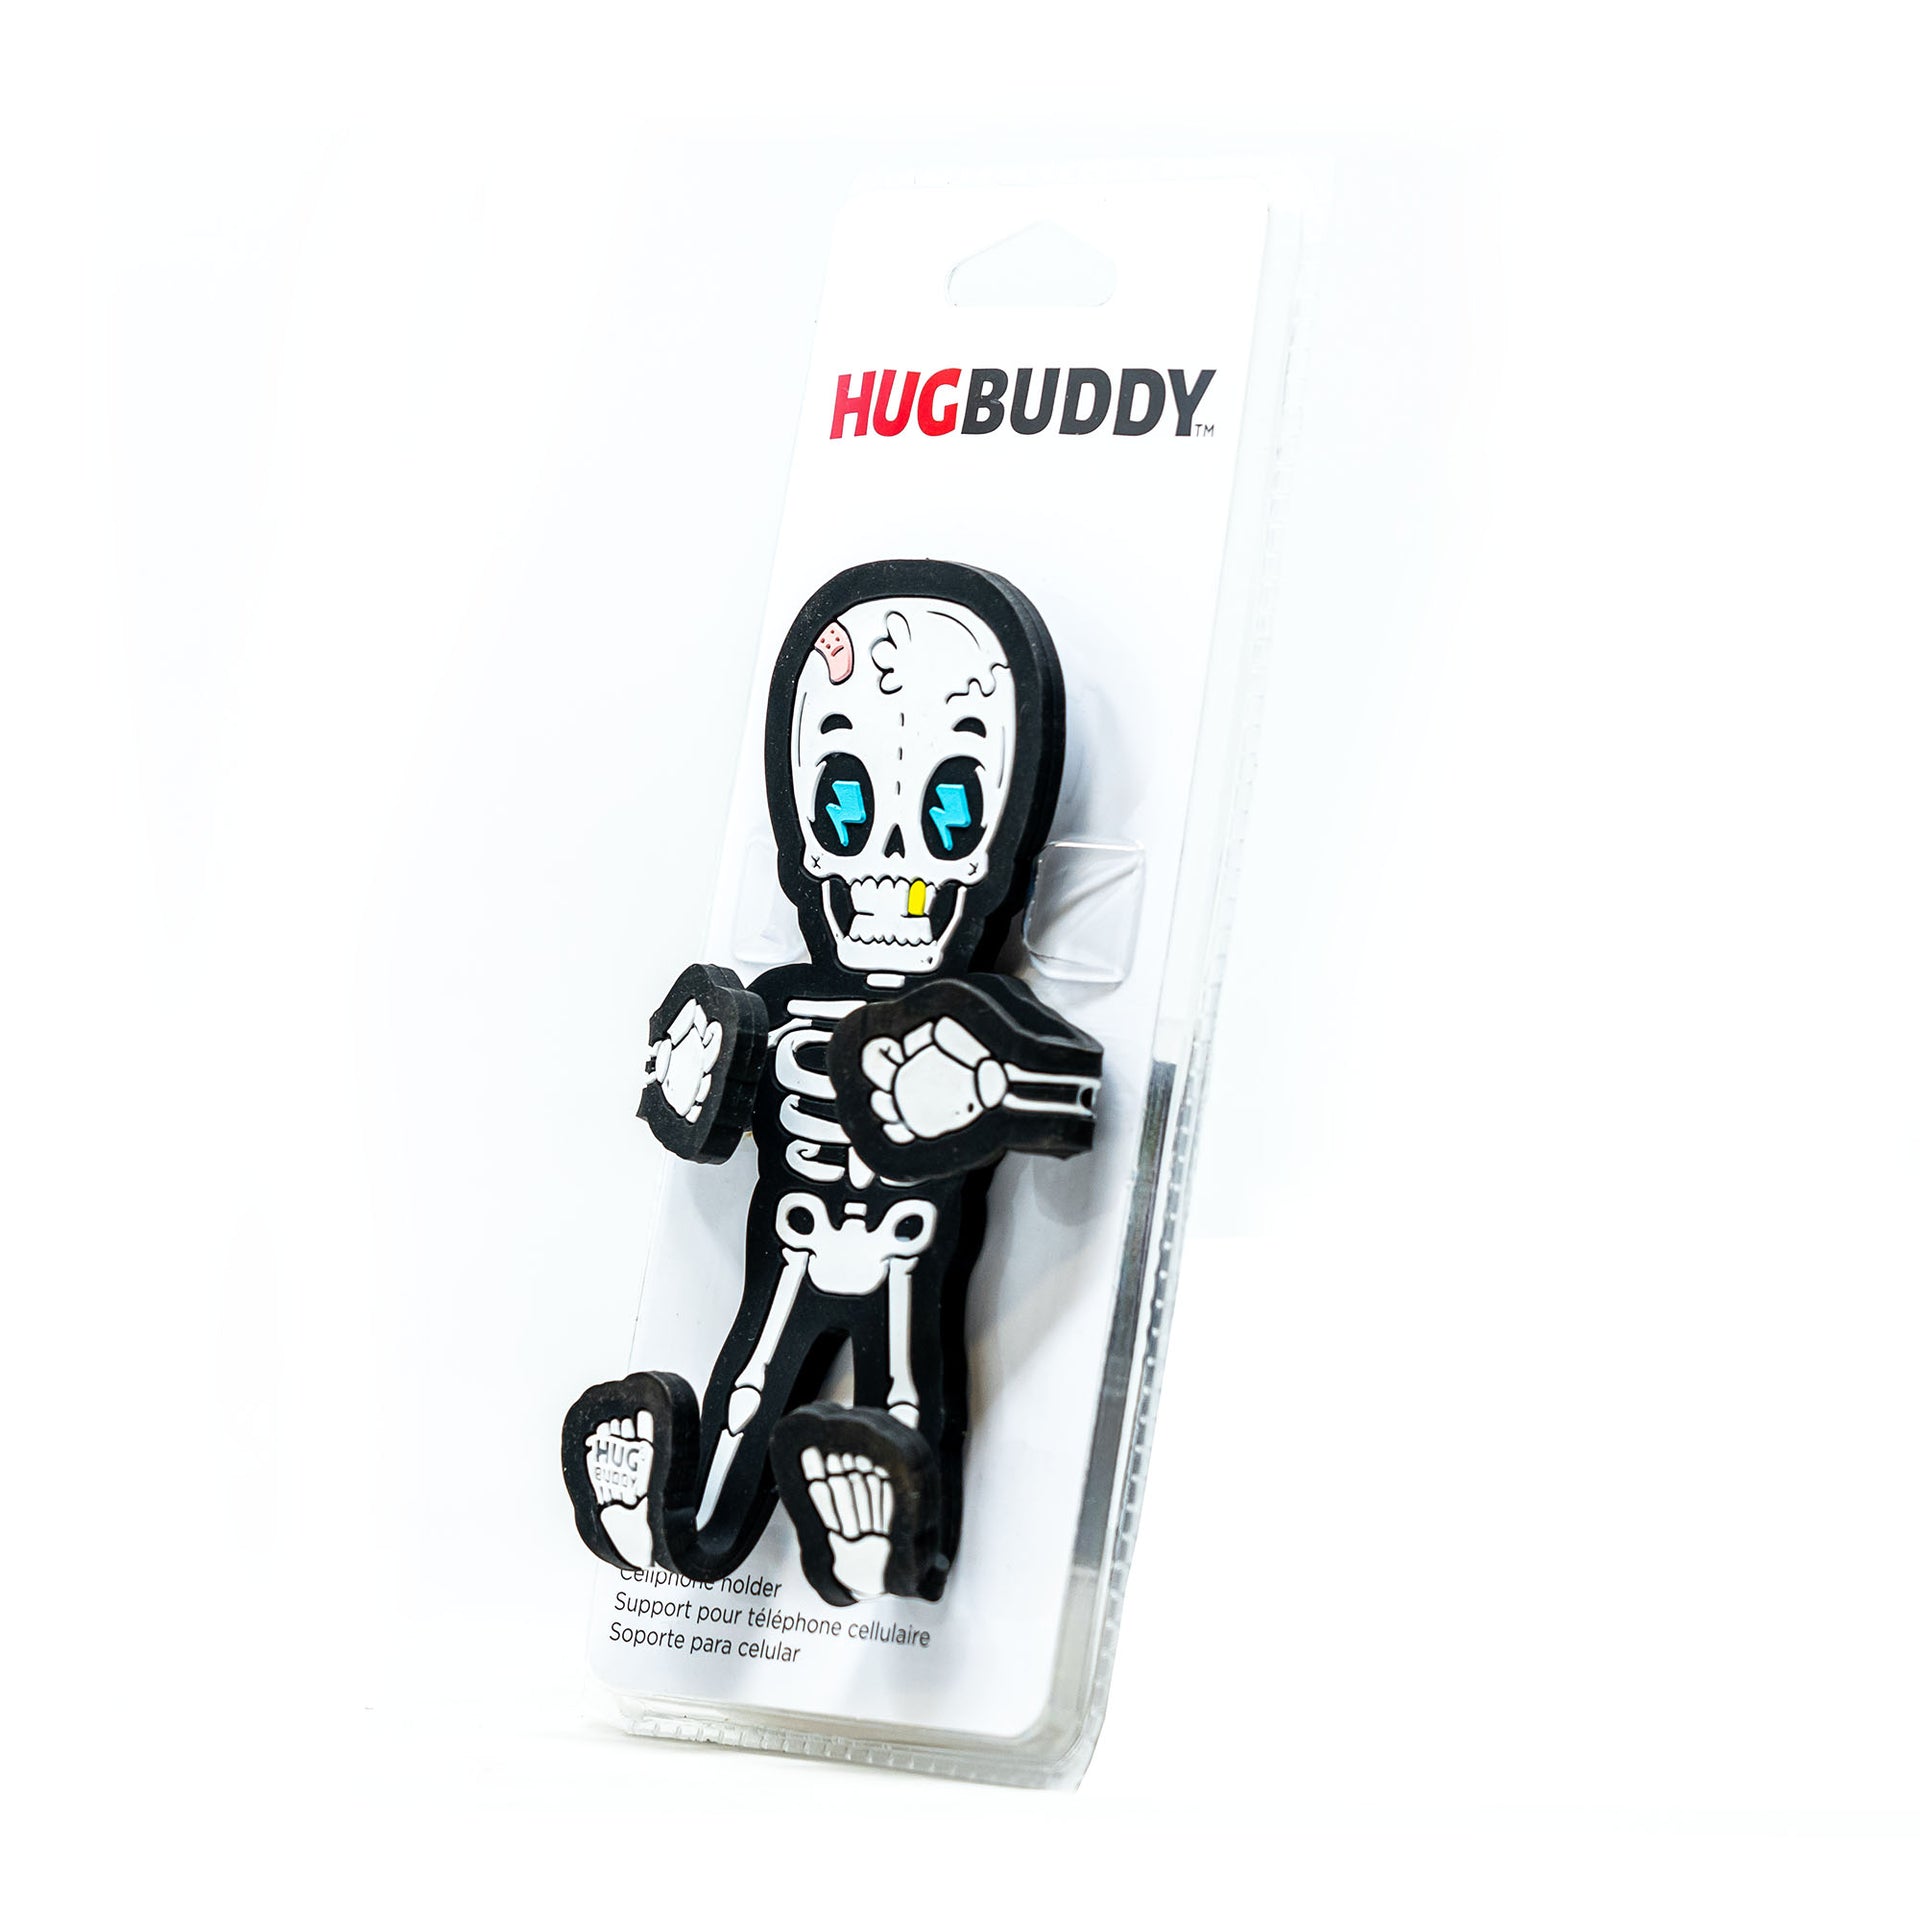 Image of Bones the Skeleton Hug Buddy packaging